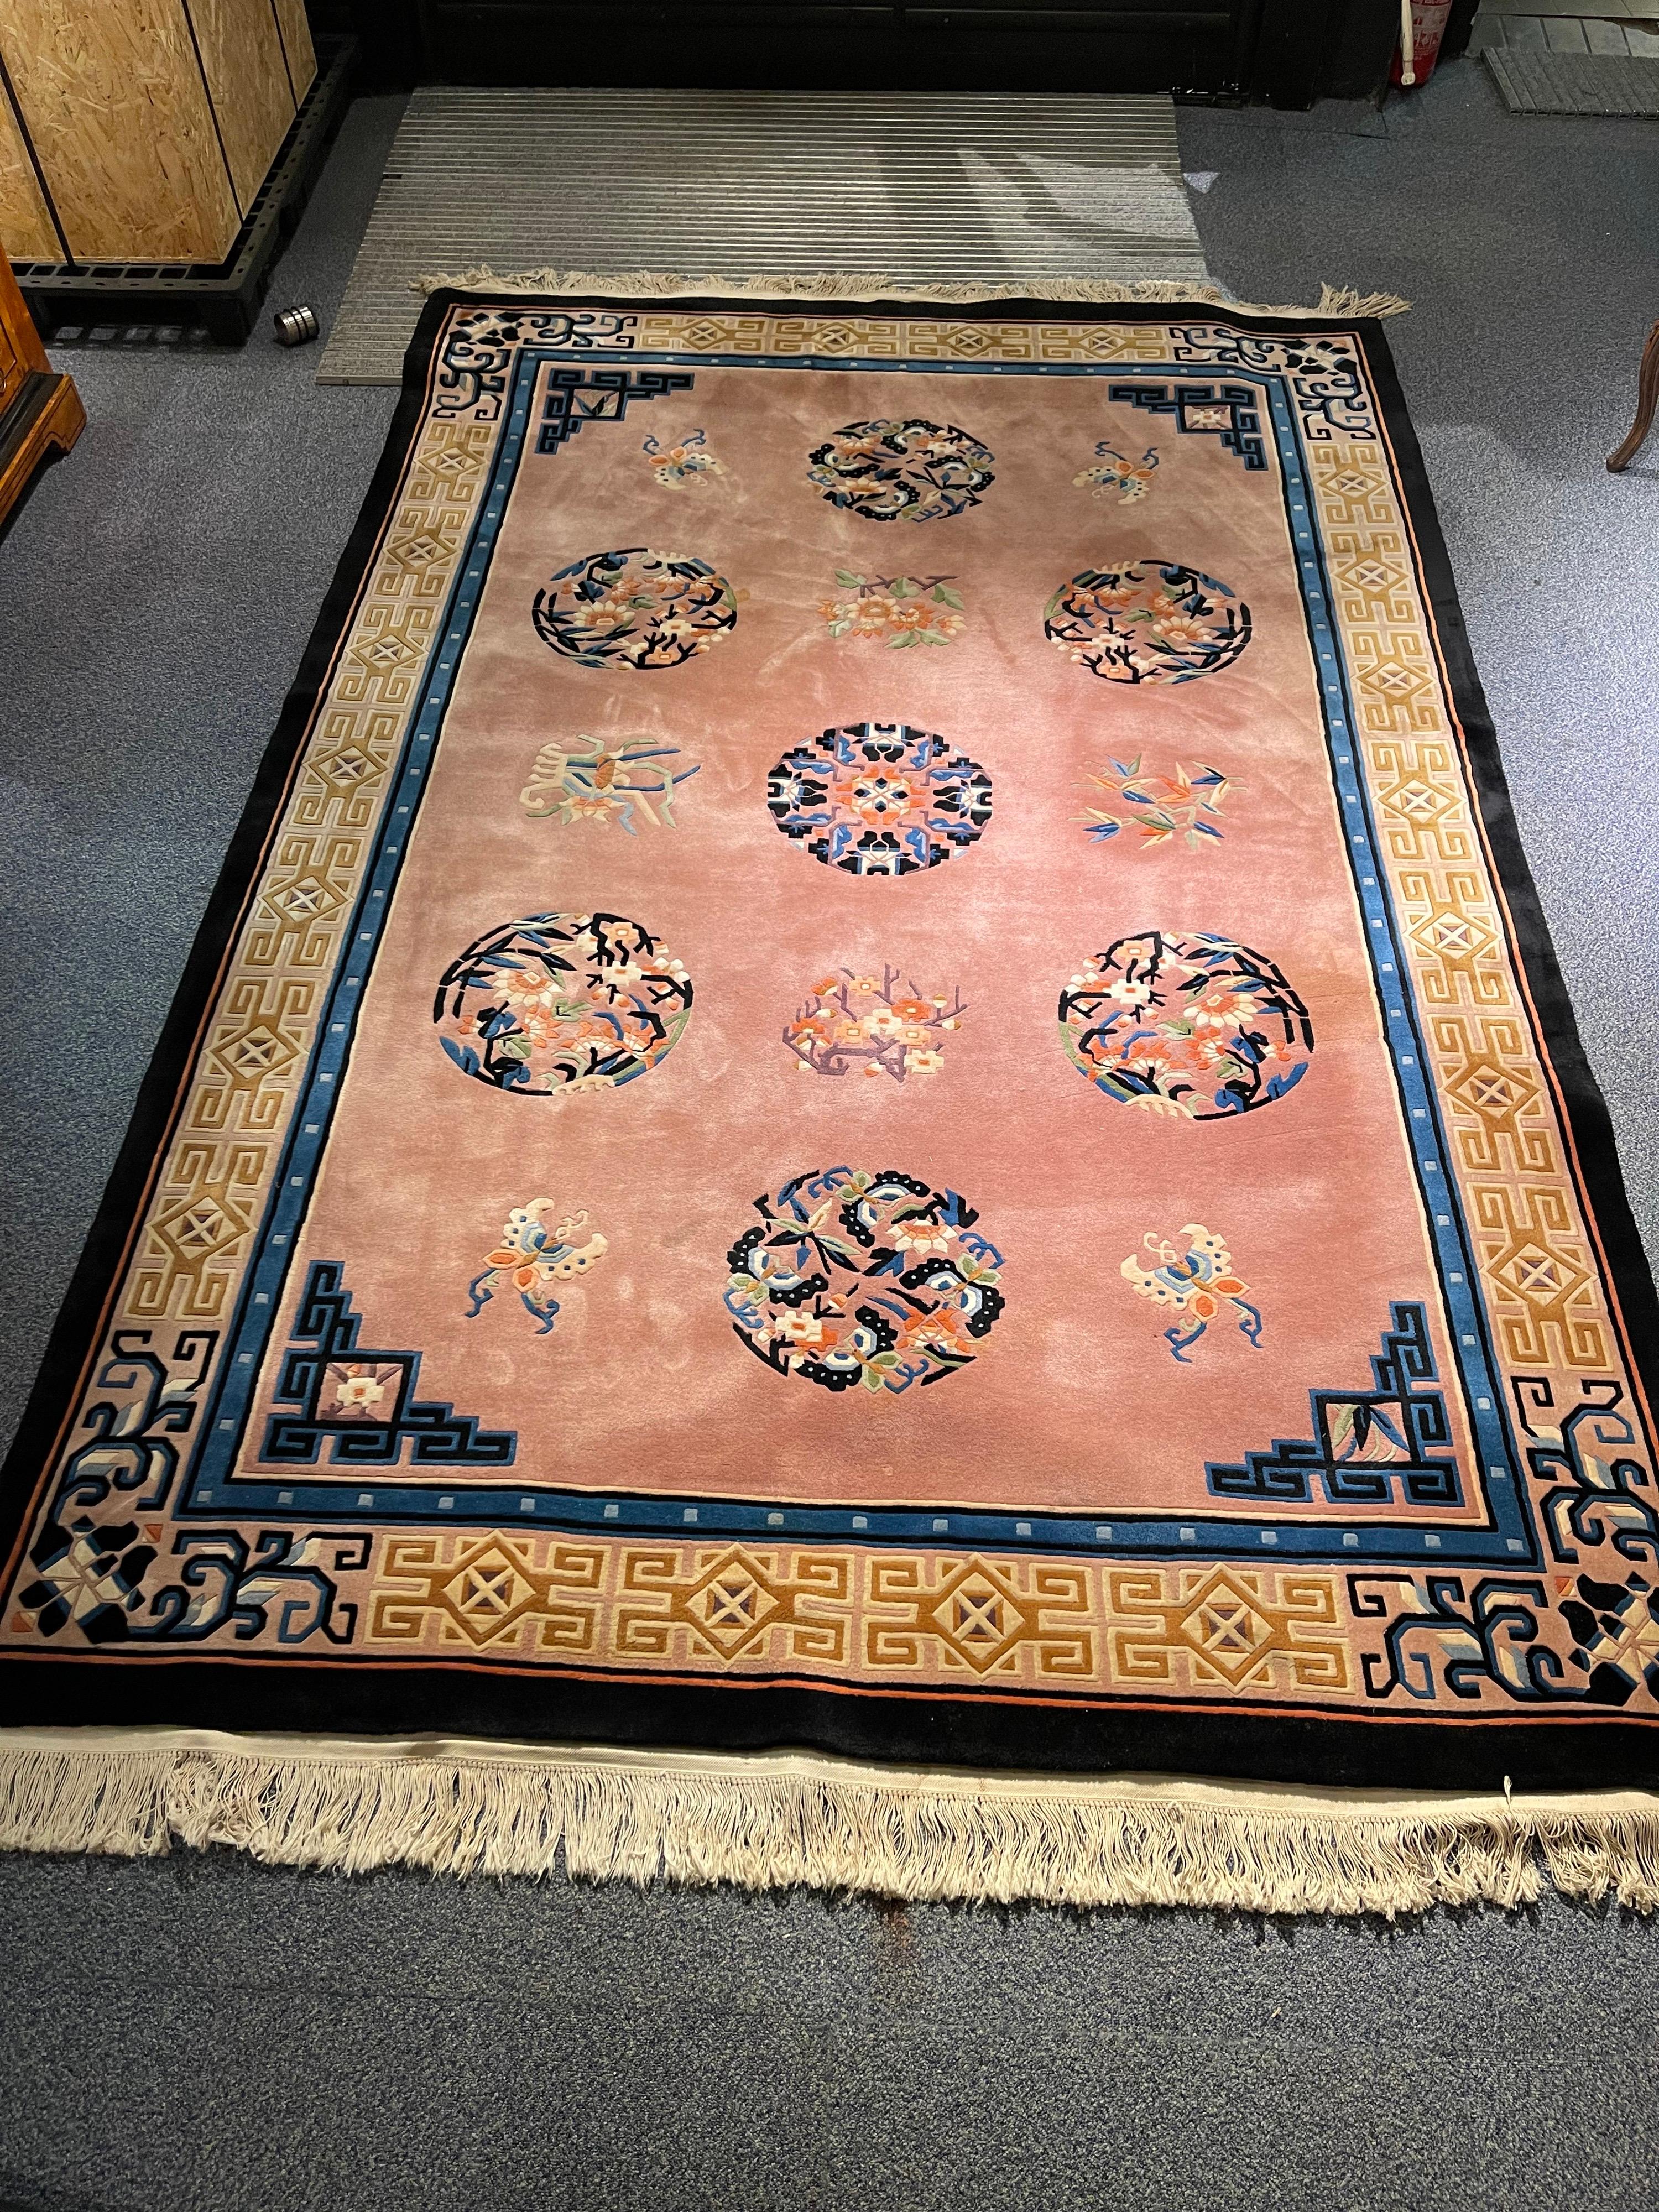 Schöner China/Asien-Salon-Teppich. Ende des 20. Jahrhunderts

Äußerst hochwertiger Asia-Teppich, fein geknüpft und aus gefärbter Korkwolle.

Geschmeidige Korkwolle von hervorragender Qualität.
Die Hintergrundfarbe ist ein lachsfarbener